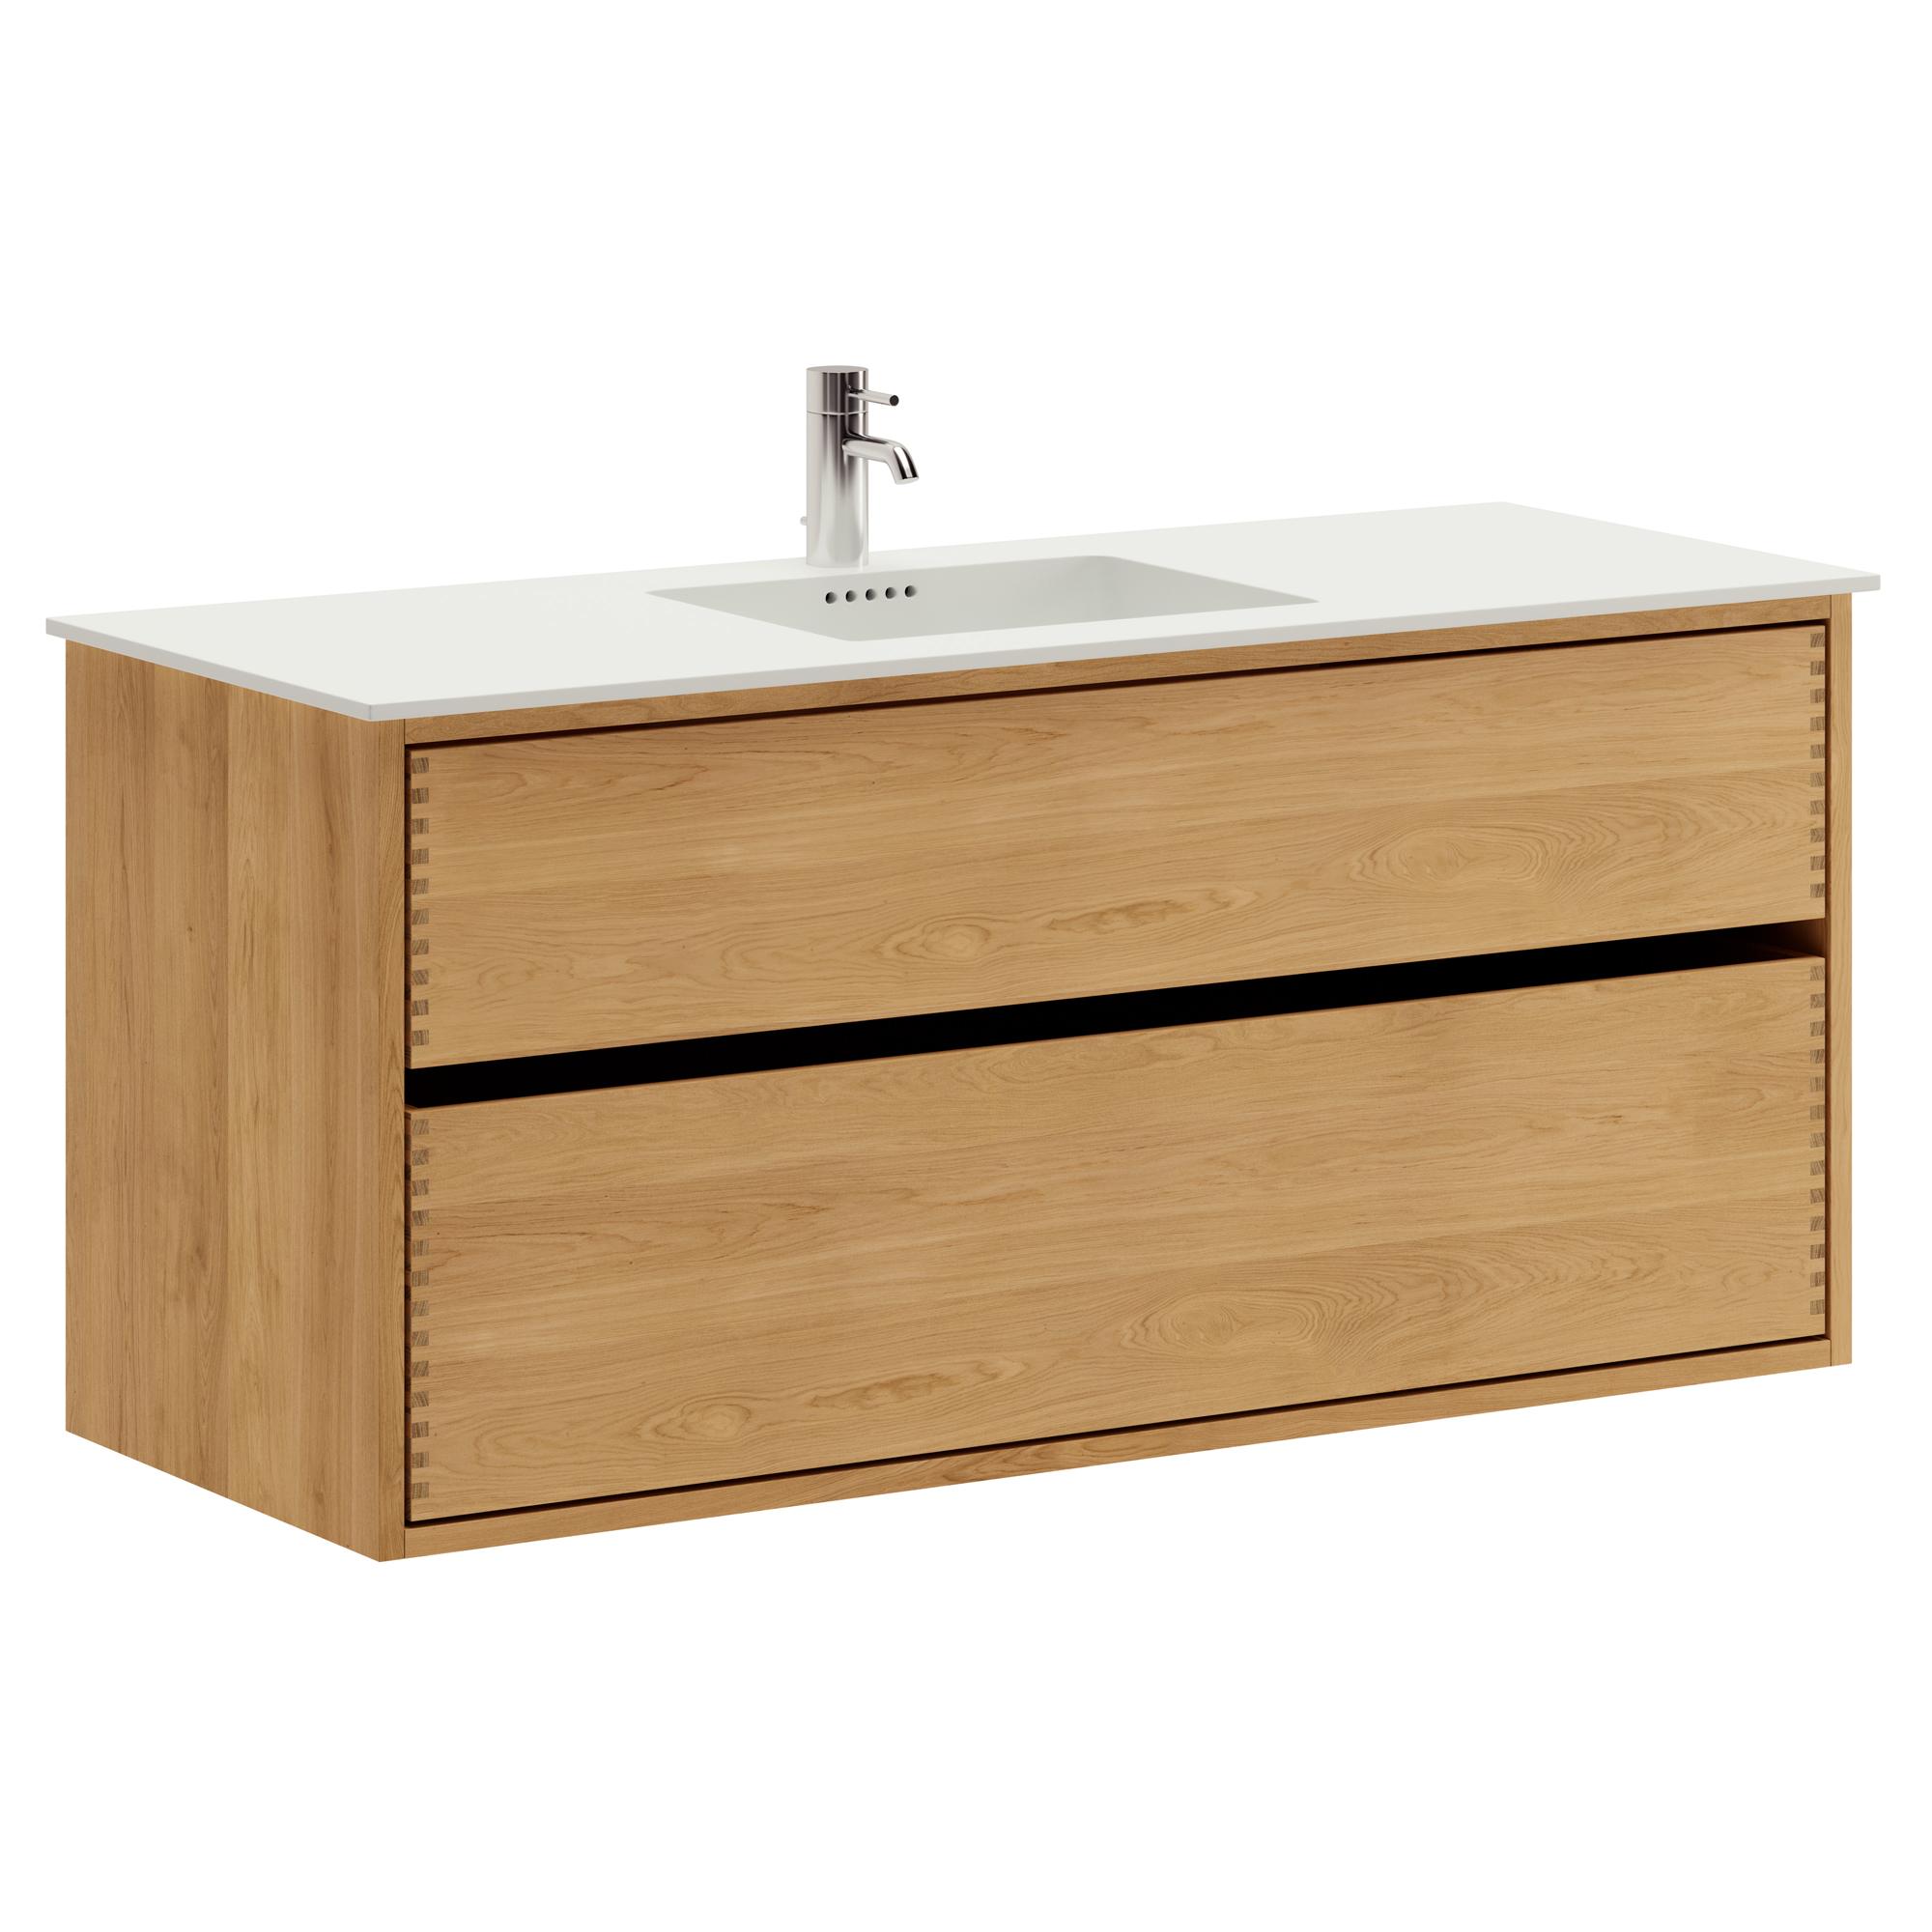 120 cm Just Wood Original Badezimmermöbel mit 2 Schubladen und Solid Surface-Waschbecken